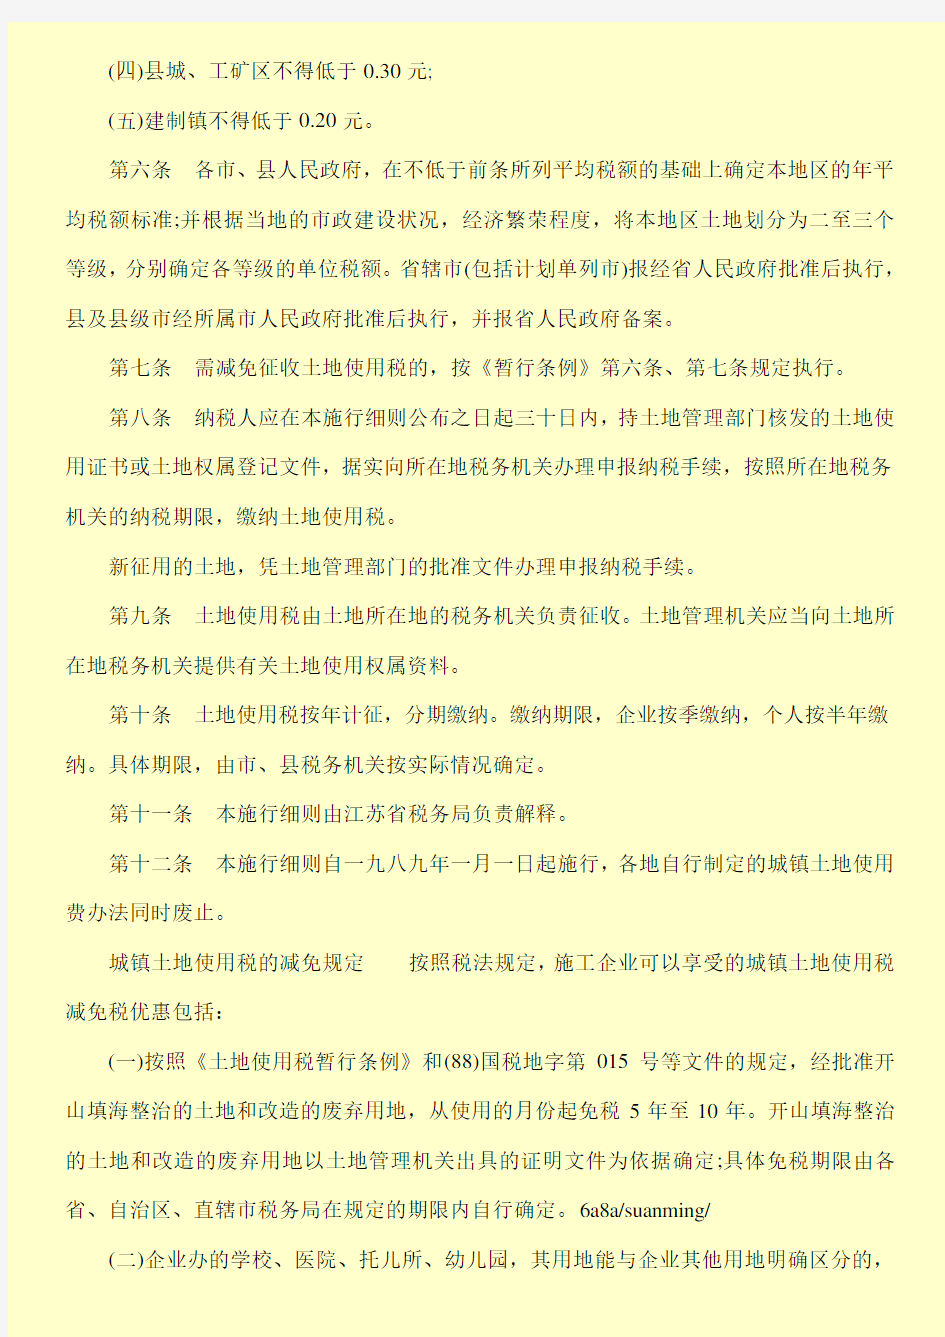 江苏省城镇土地使用税施行细则